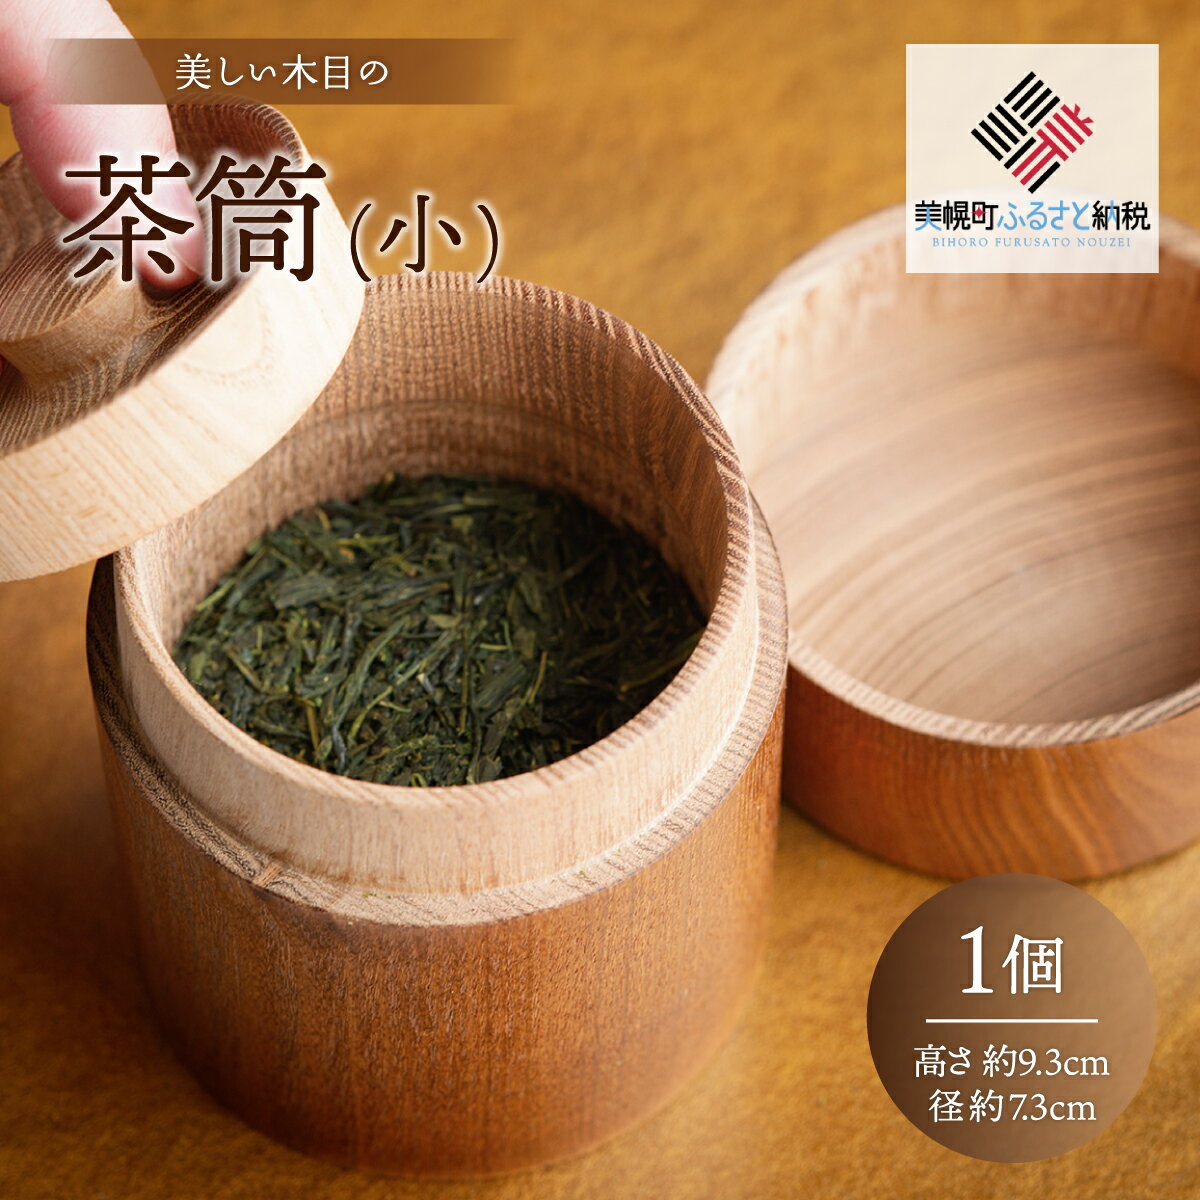 美しい木目の茶筒(小) 茶筒 ちゃづつ お茶 茶道具 北海道 美幌町 送料無料